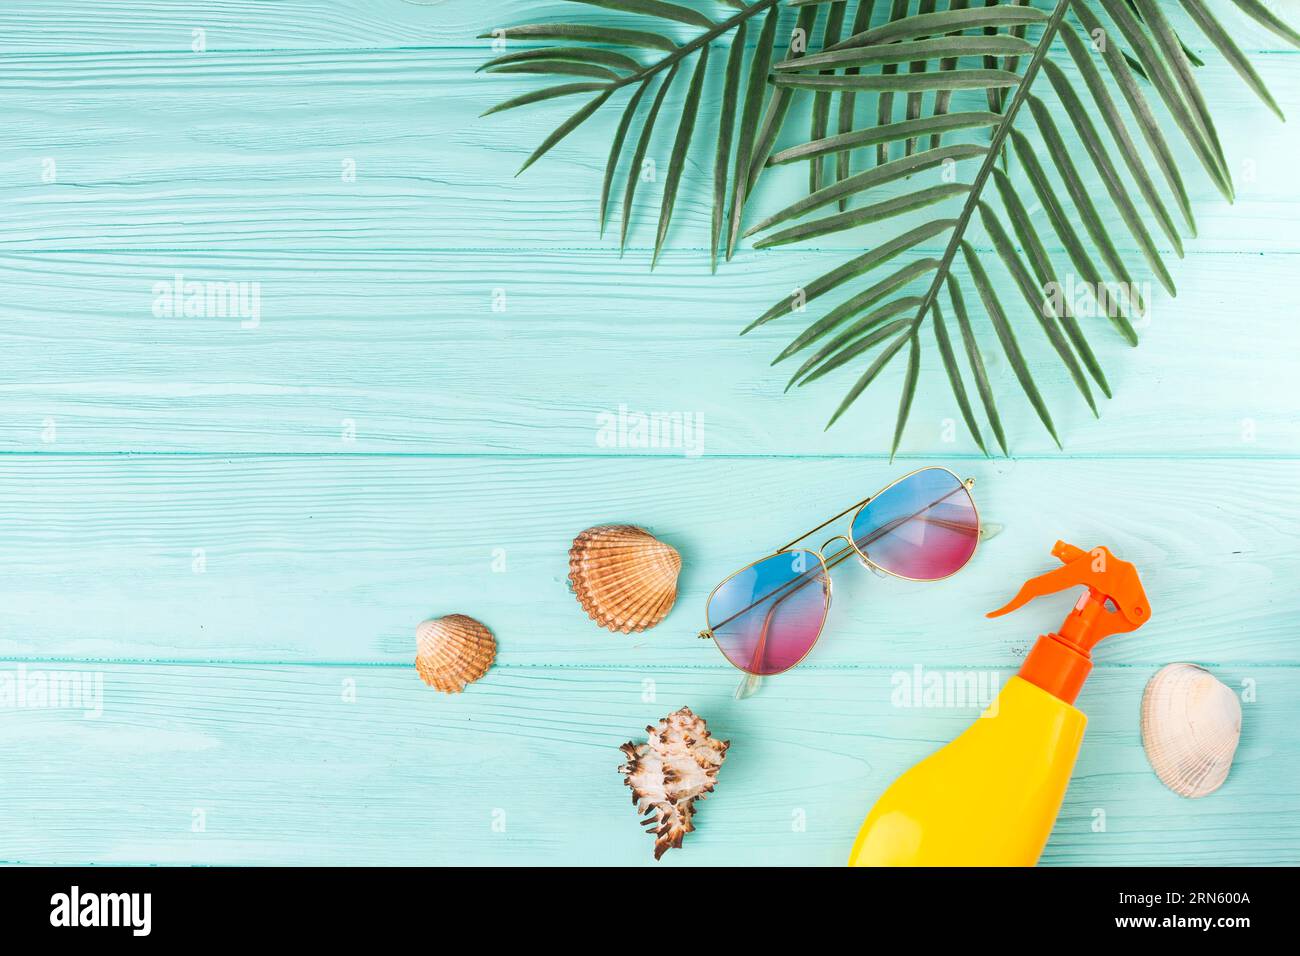 Feuilles tropicales avec composition d'accessoires de plage Banque D'Images